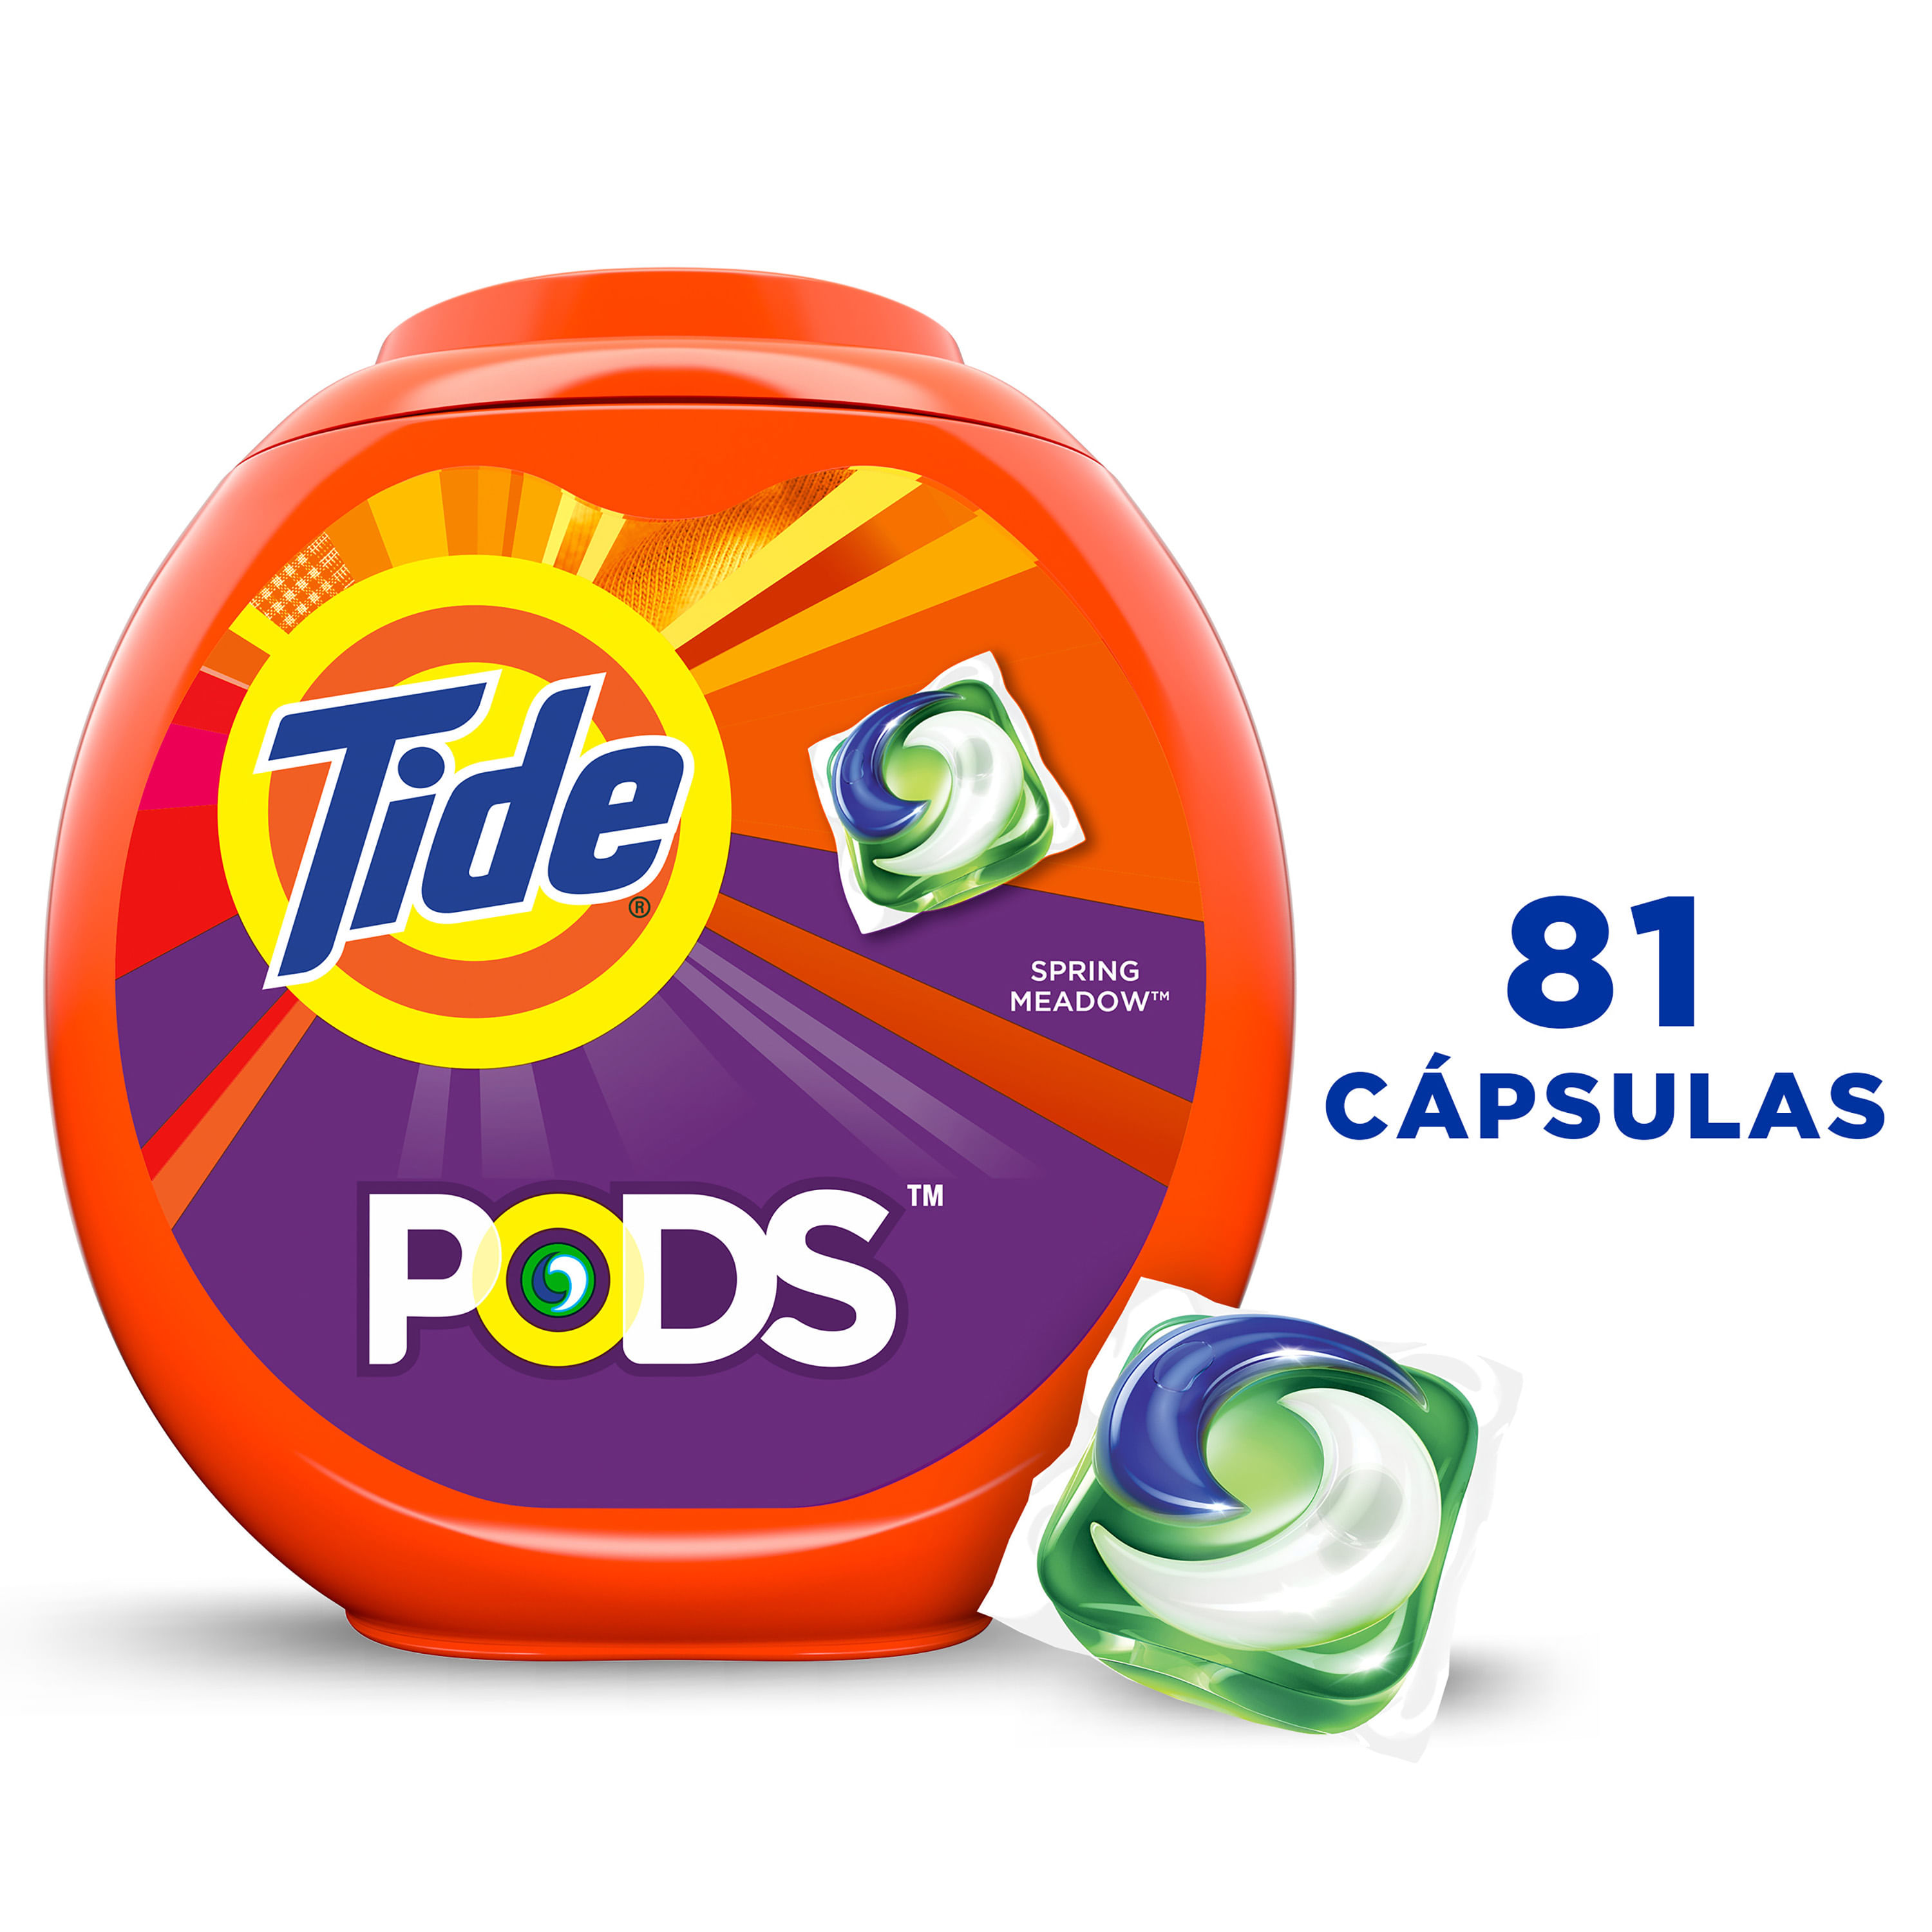 Detergente-para-ropa-en-c-psulas-marca-Tide-Pods-Spring-Meadow-para-ropa-blanca-y-de-color-81-uds-1-33105